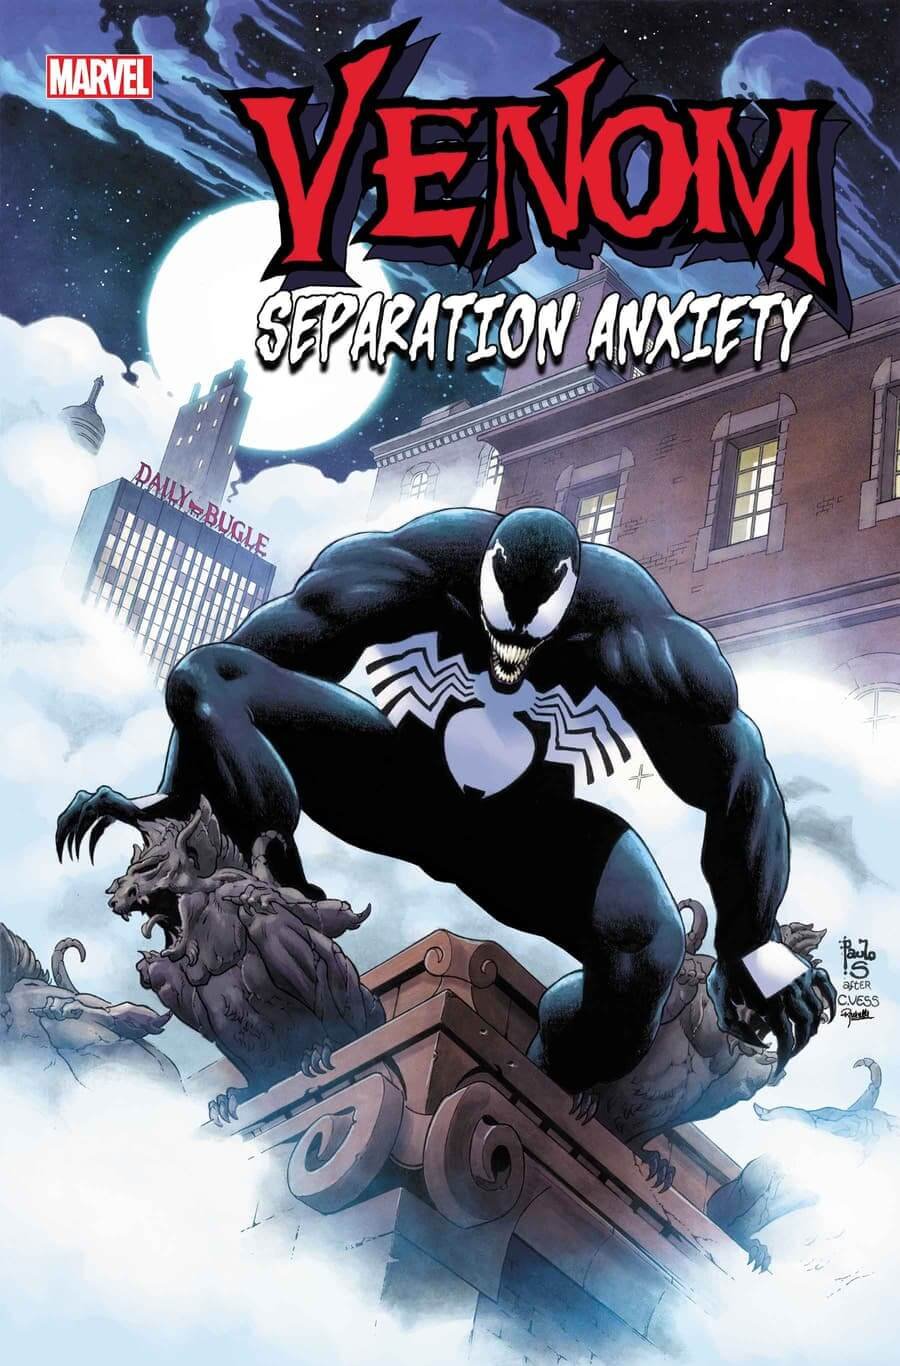 Couverture de Venom : Separation Anxiety 1 par Paulo Siqueira